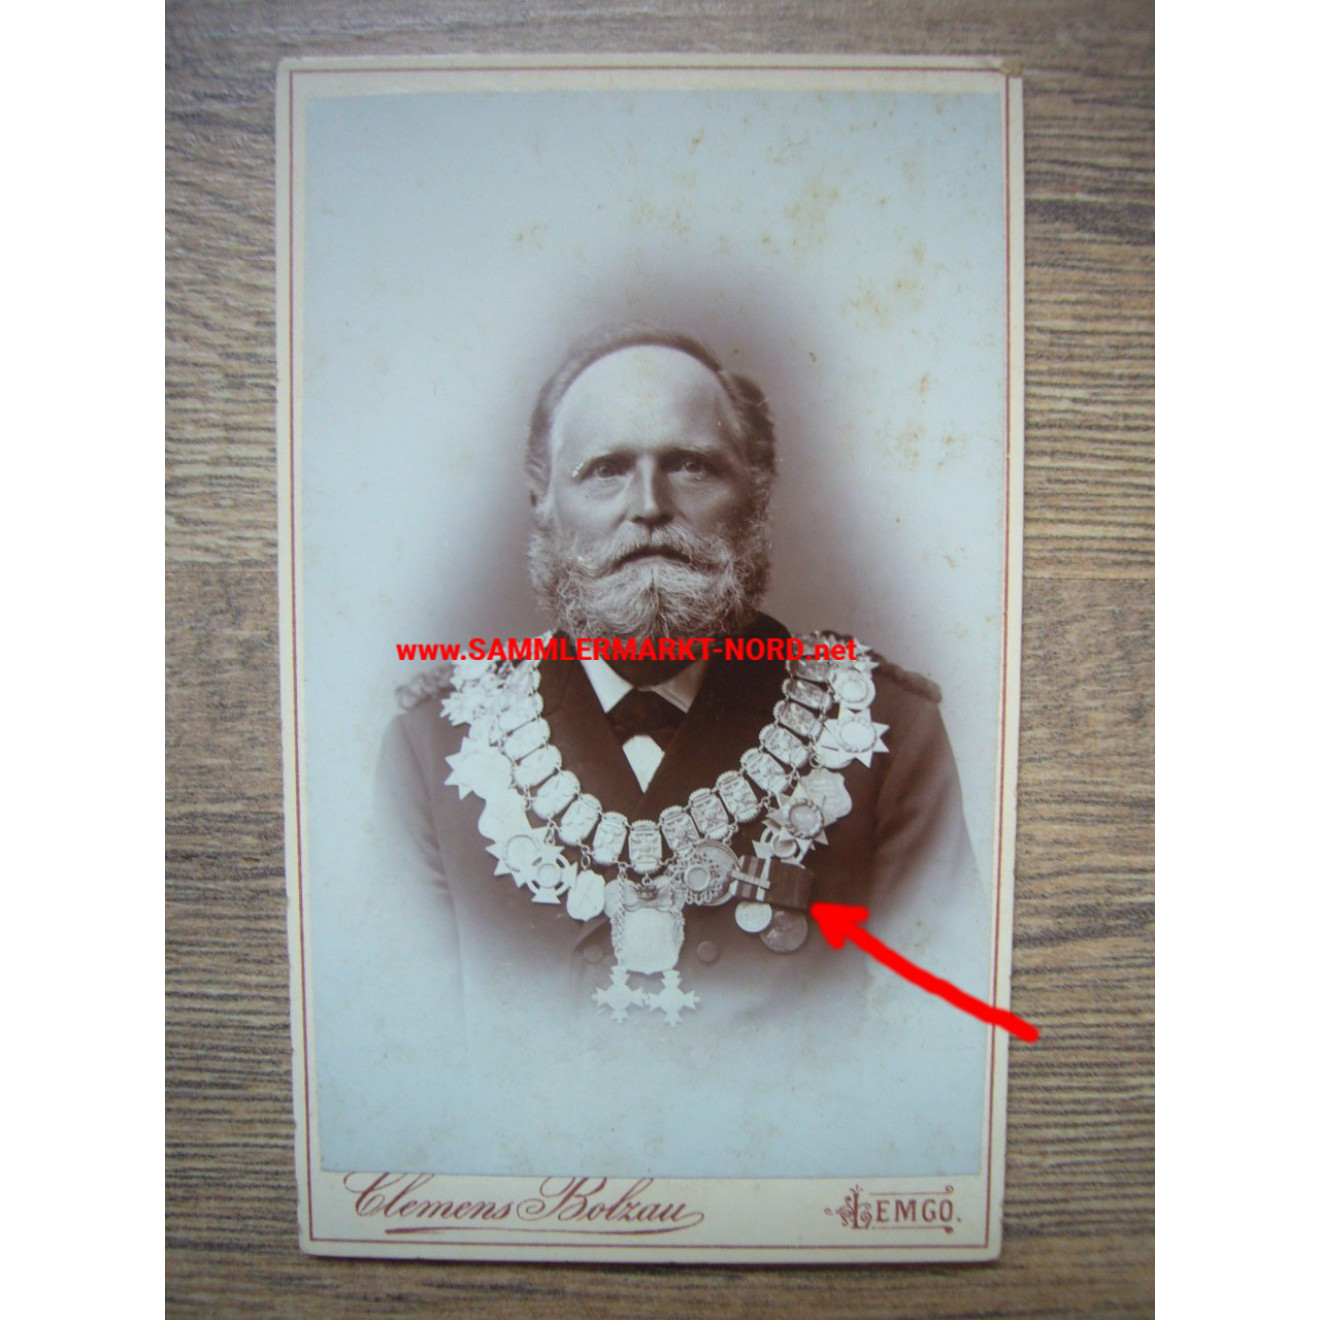 Kabinettfoto - Lemgo - Schützenkönig mit Ordenskette + Ordenspange